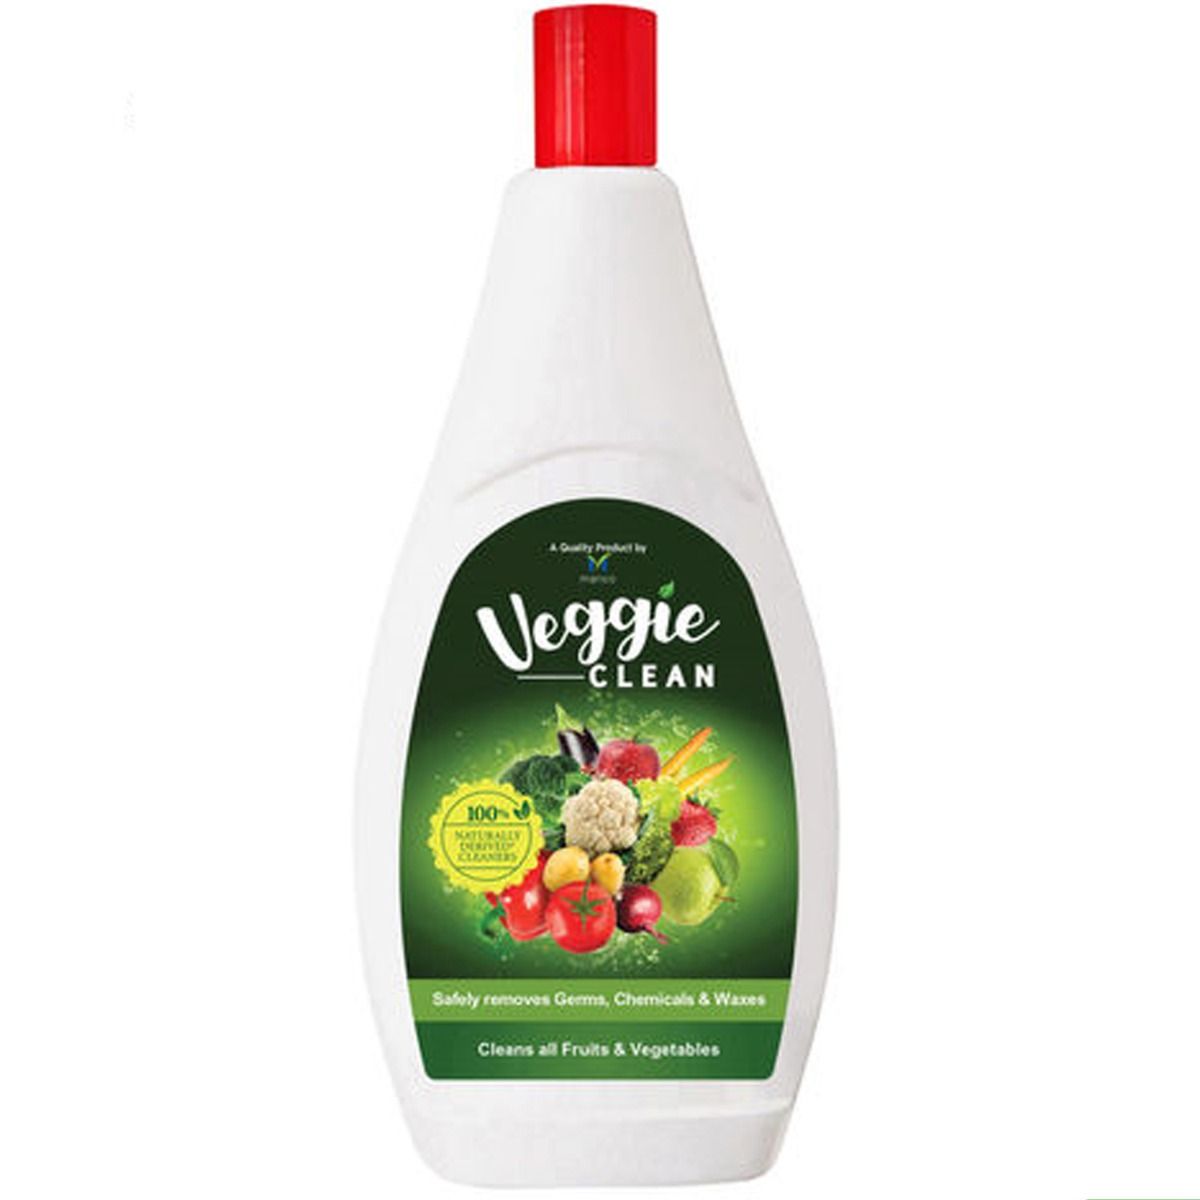 Marico Veggie Clean, 400 ml, Pack of 1 